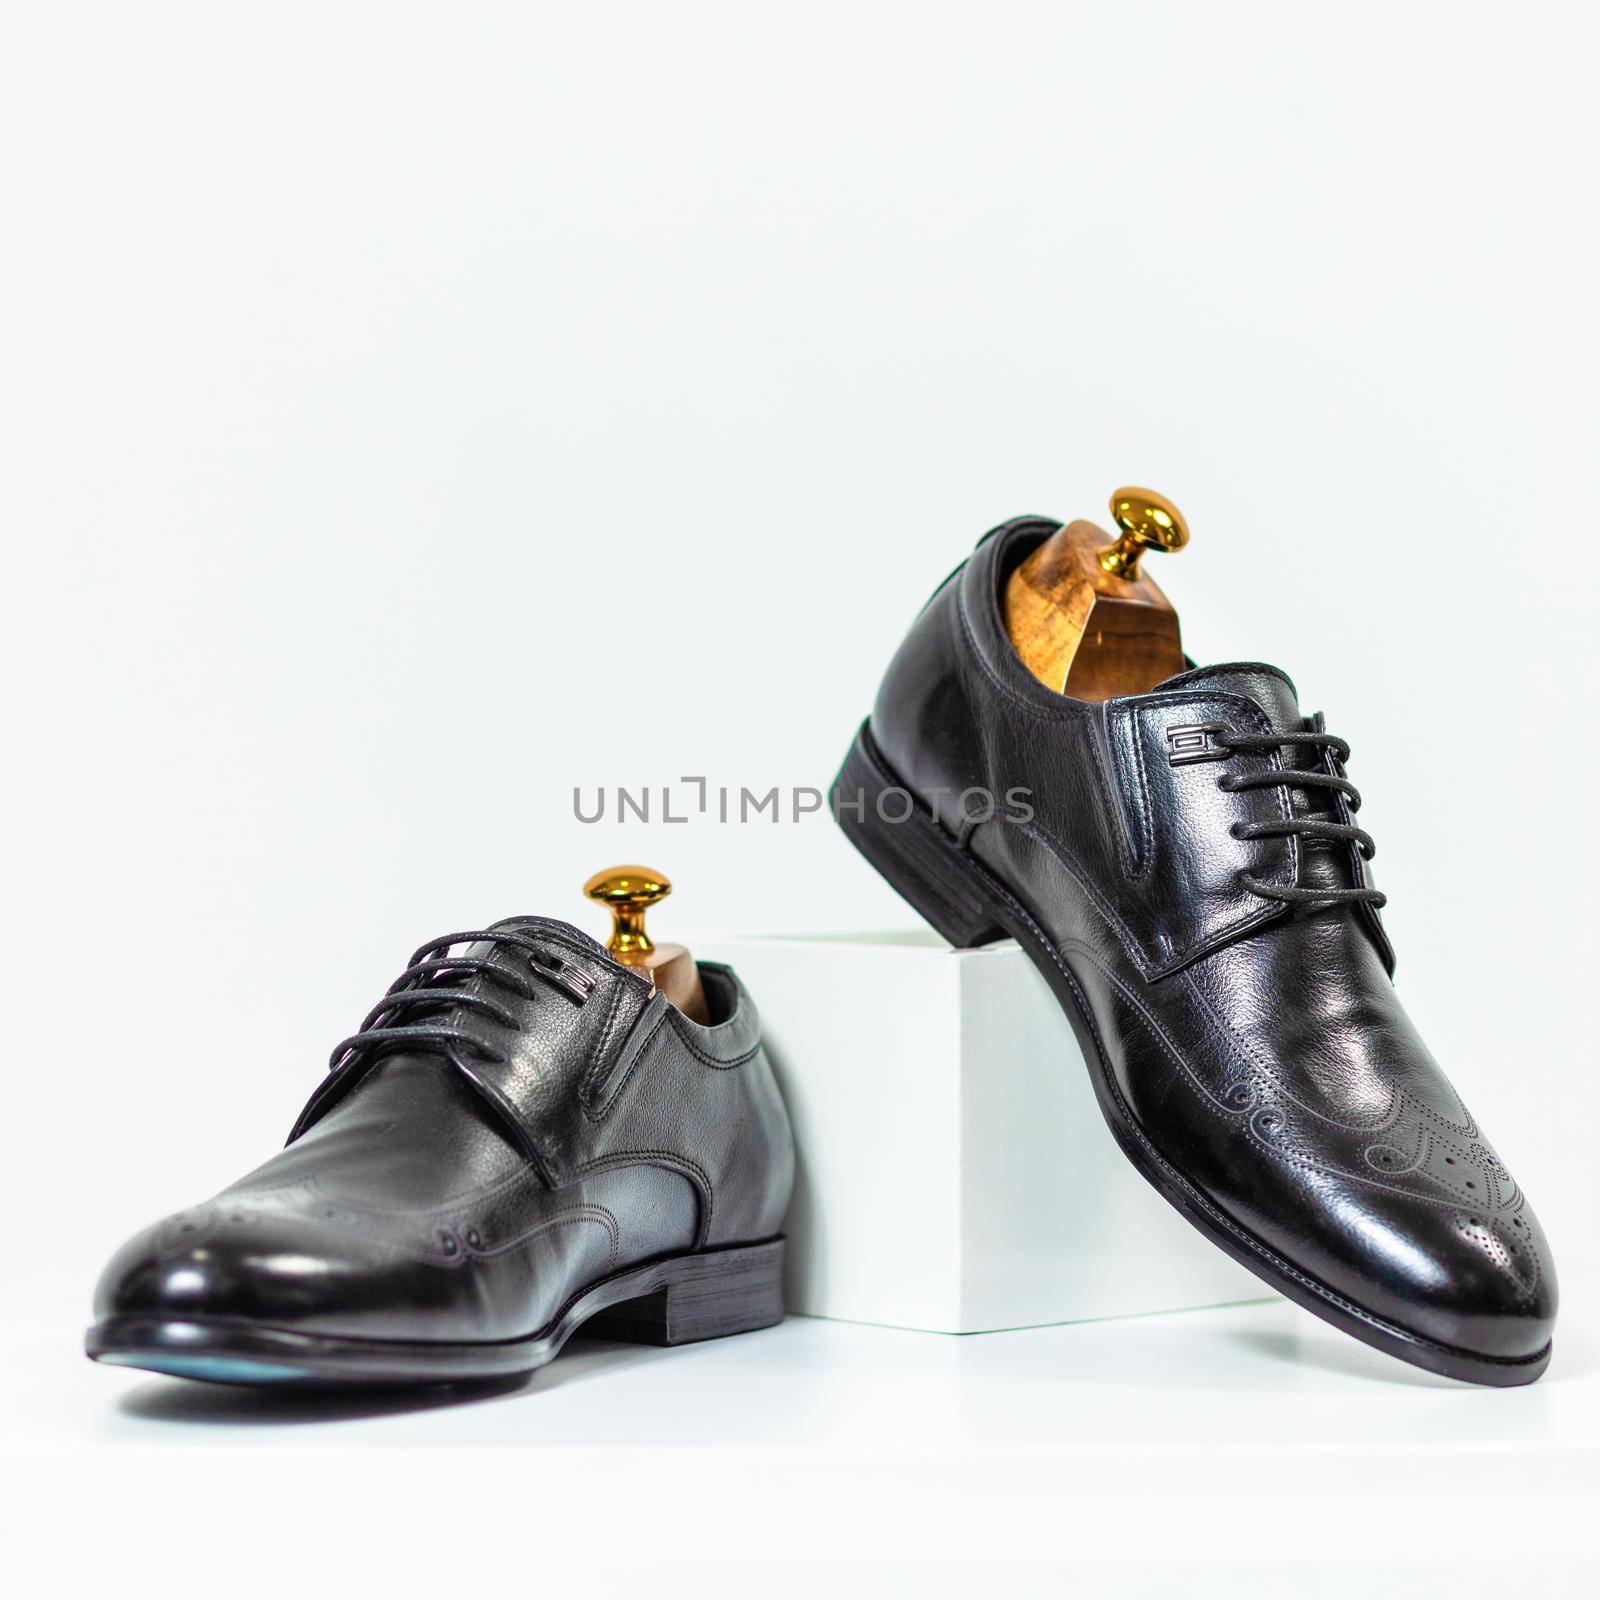 Men's classic black shoes close up